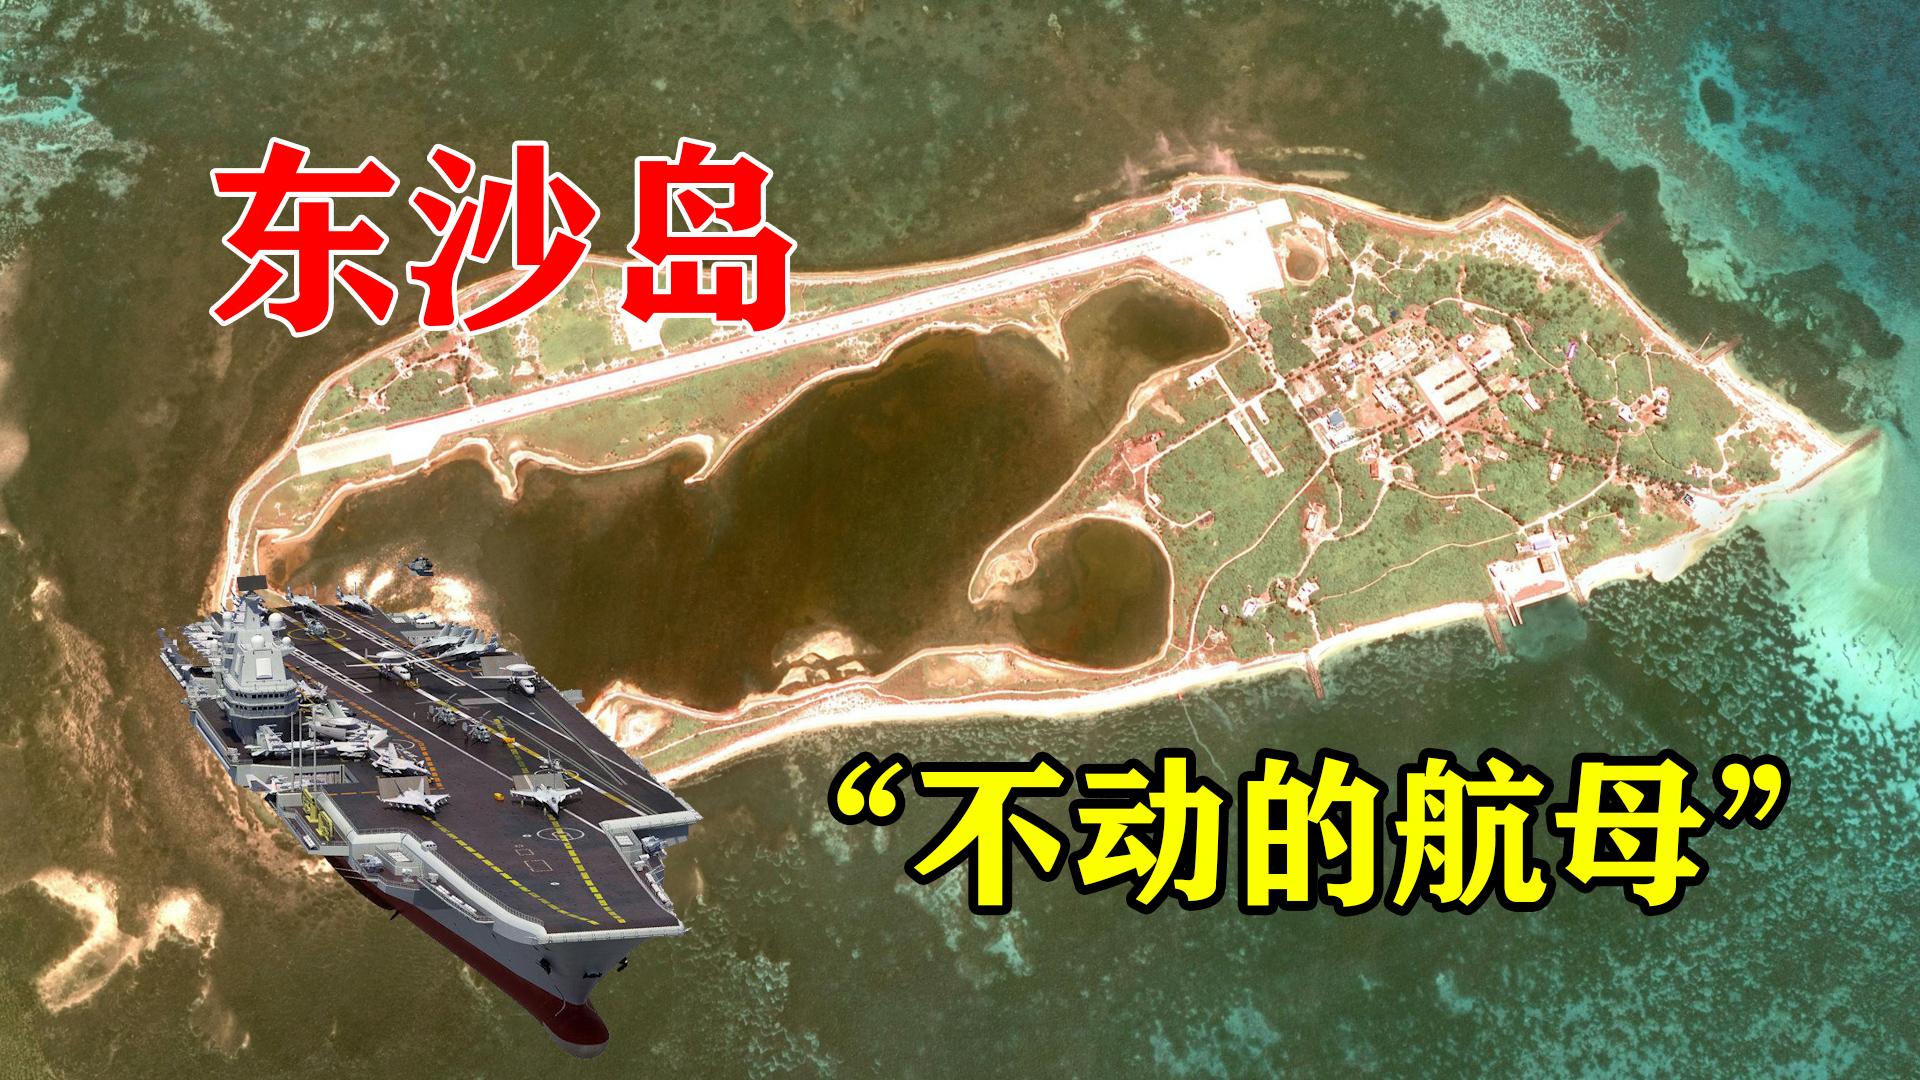 中国的黄岩岛与2012年的黄岩岛事件 | 南海战略态势感知计划